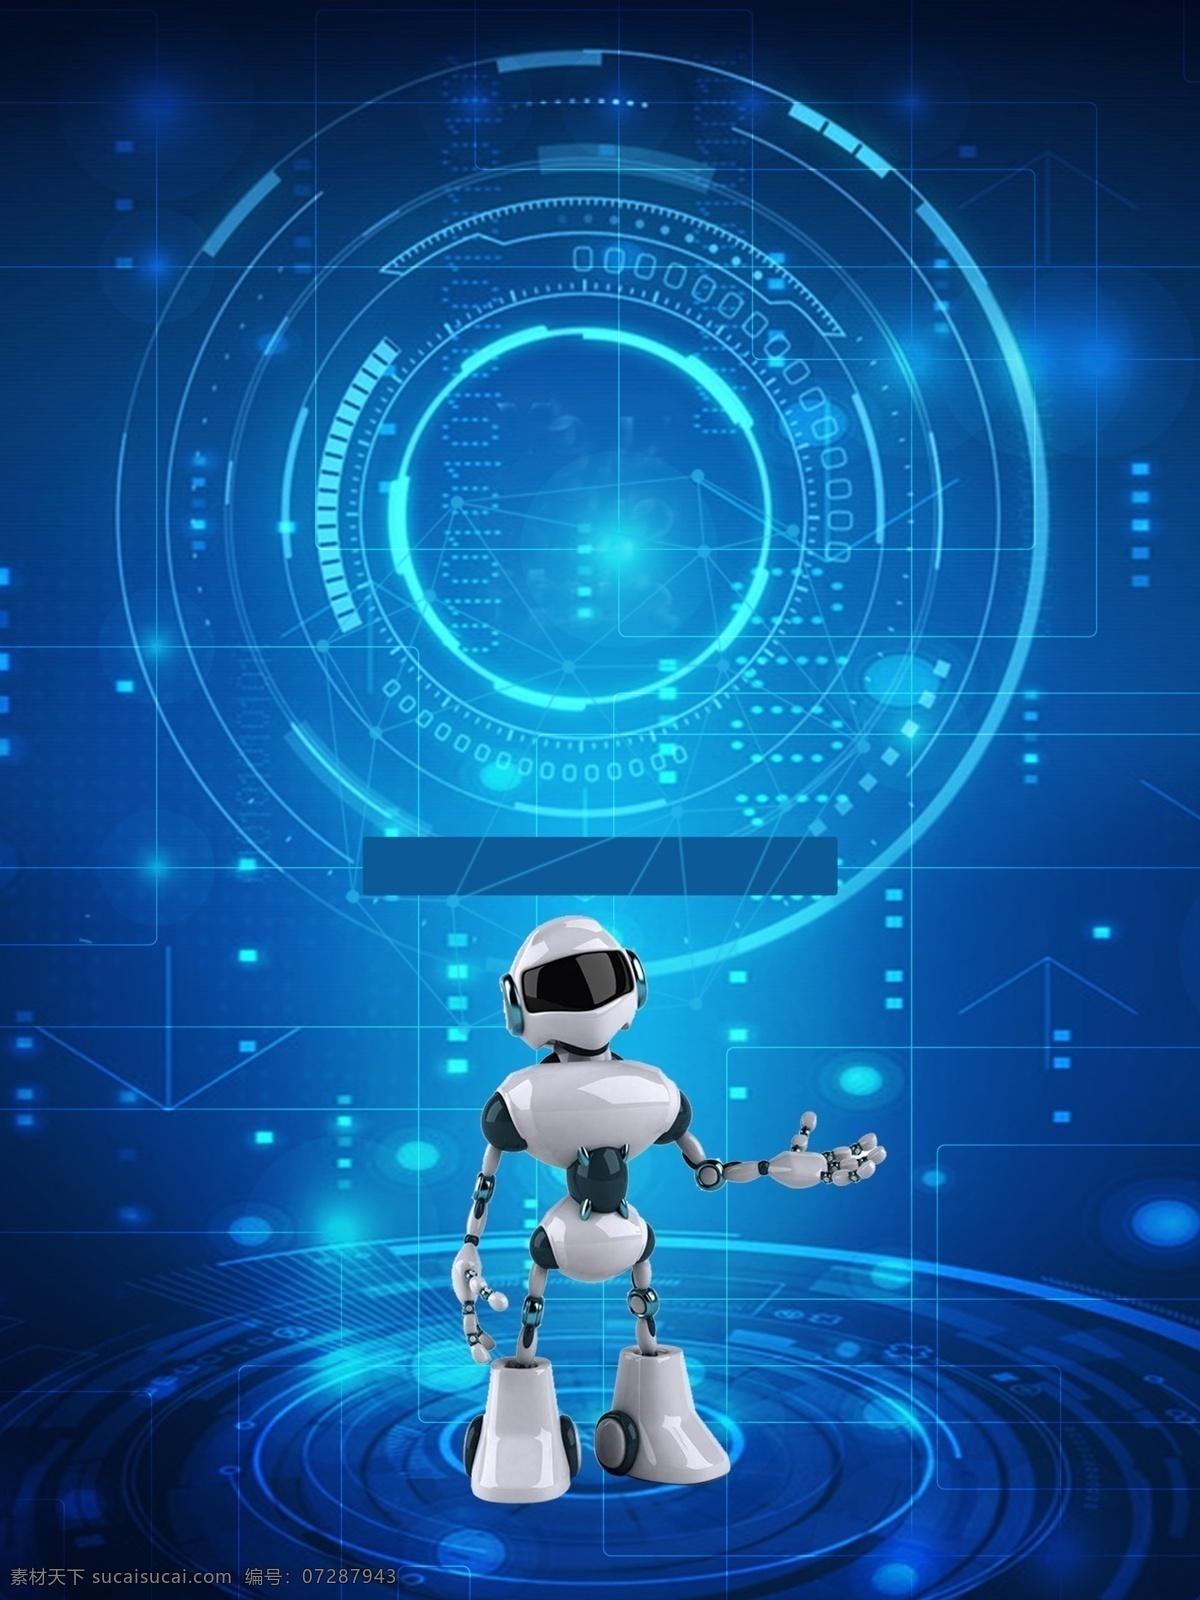 简约 机器人 广告 背景 广告背景 科技 光圈 蓝色背景 智能 手绘 高智能